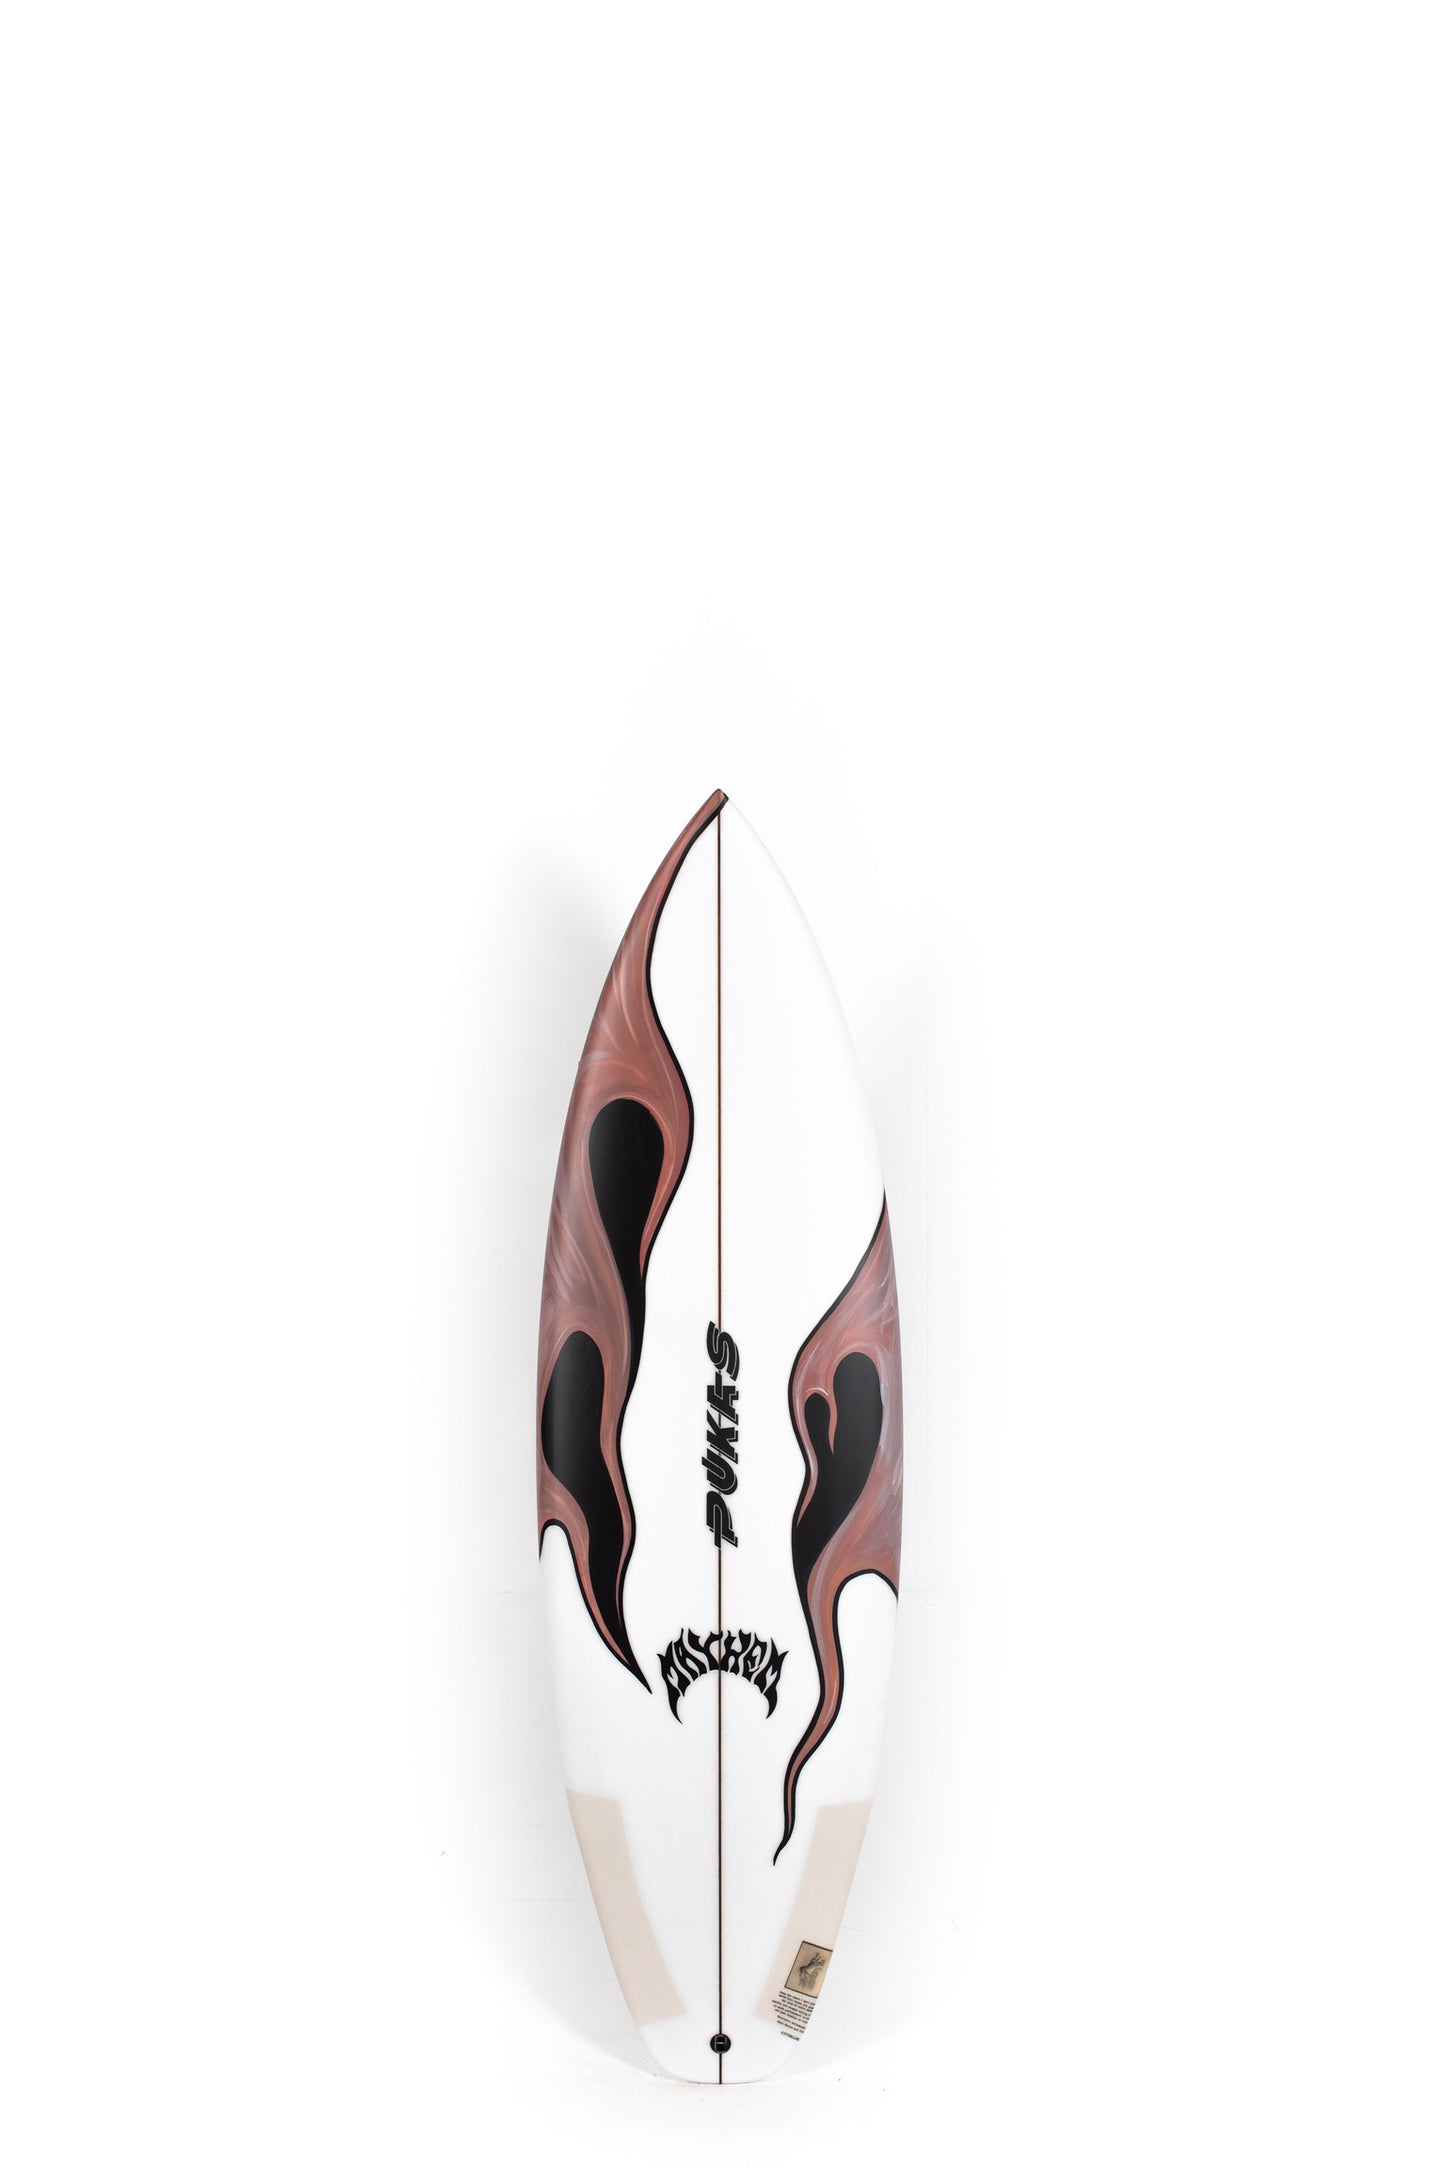 Pukas Surf Shop - Pukas Surfboard - HYPERLINK by Matt Biolos - 5'7" x 19.25" x 2.32" - 27.10L - PM01123